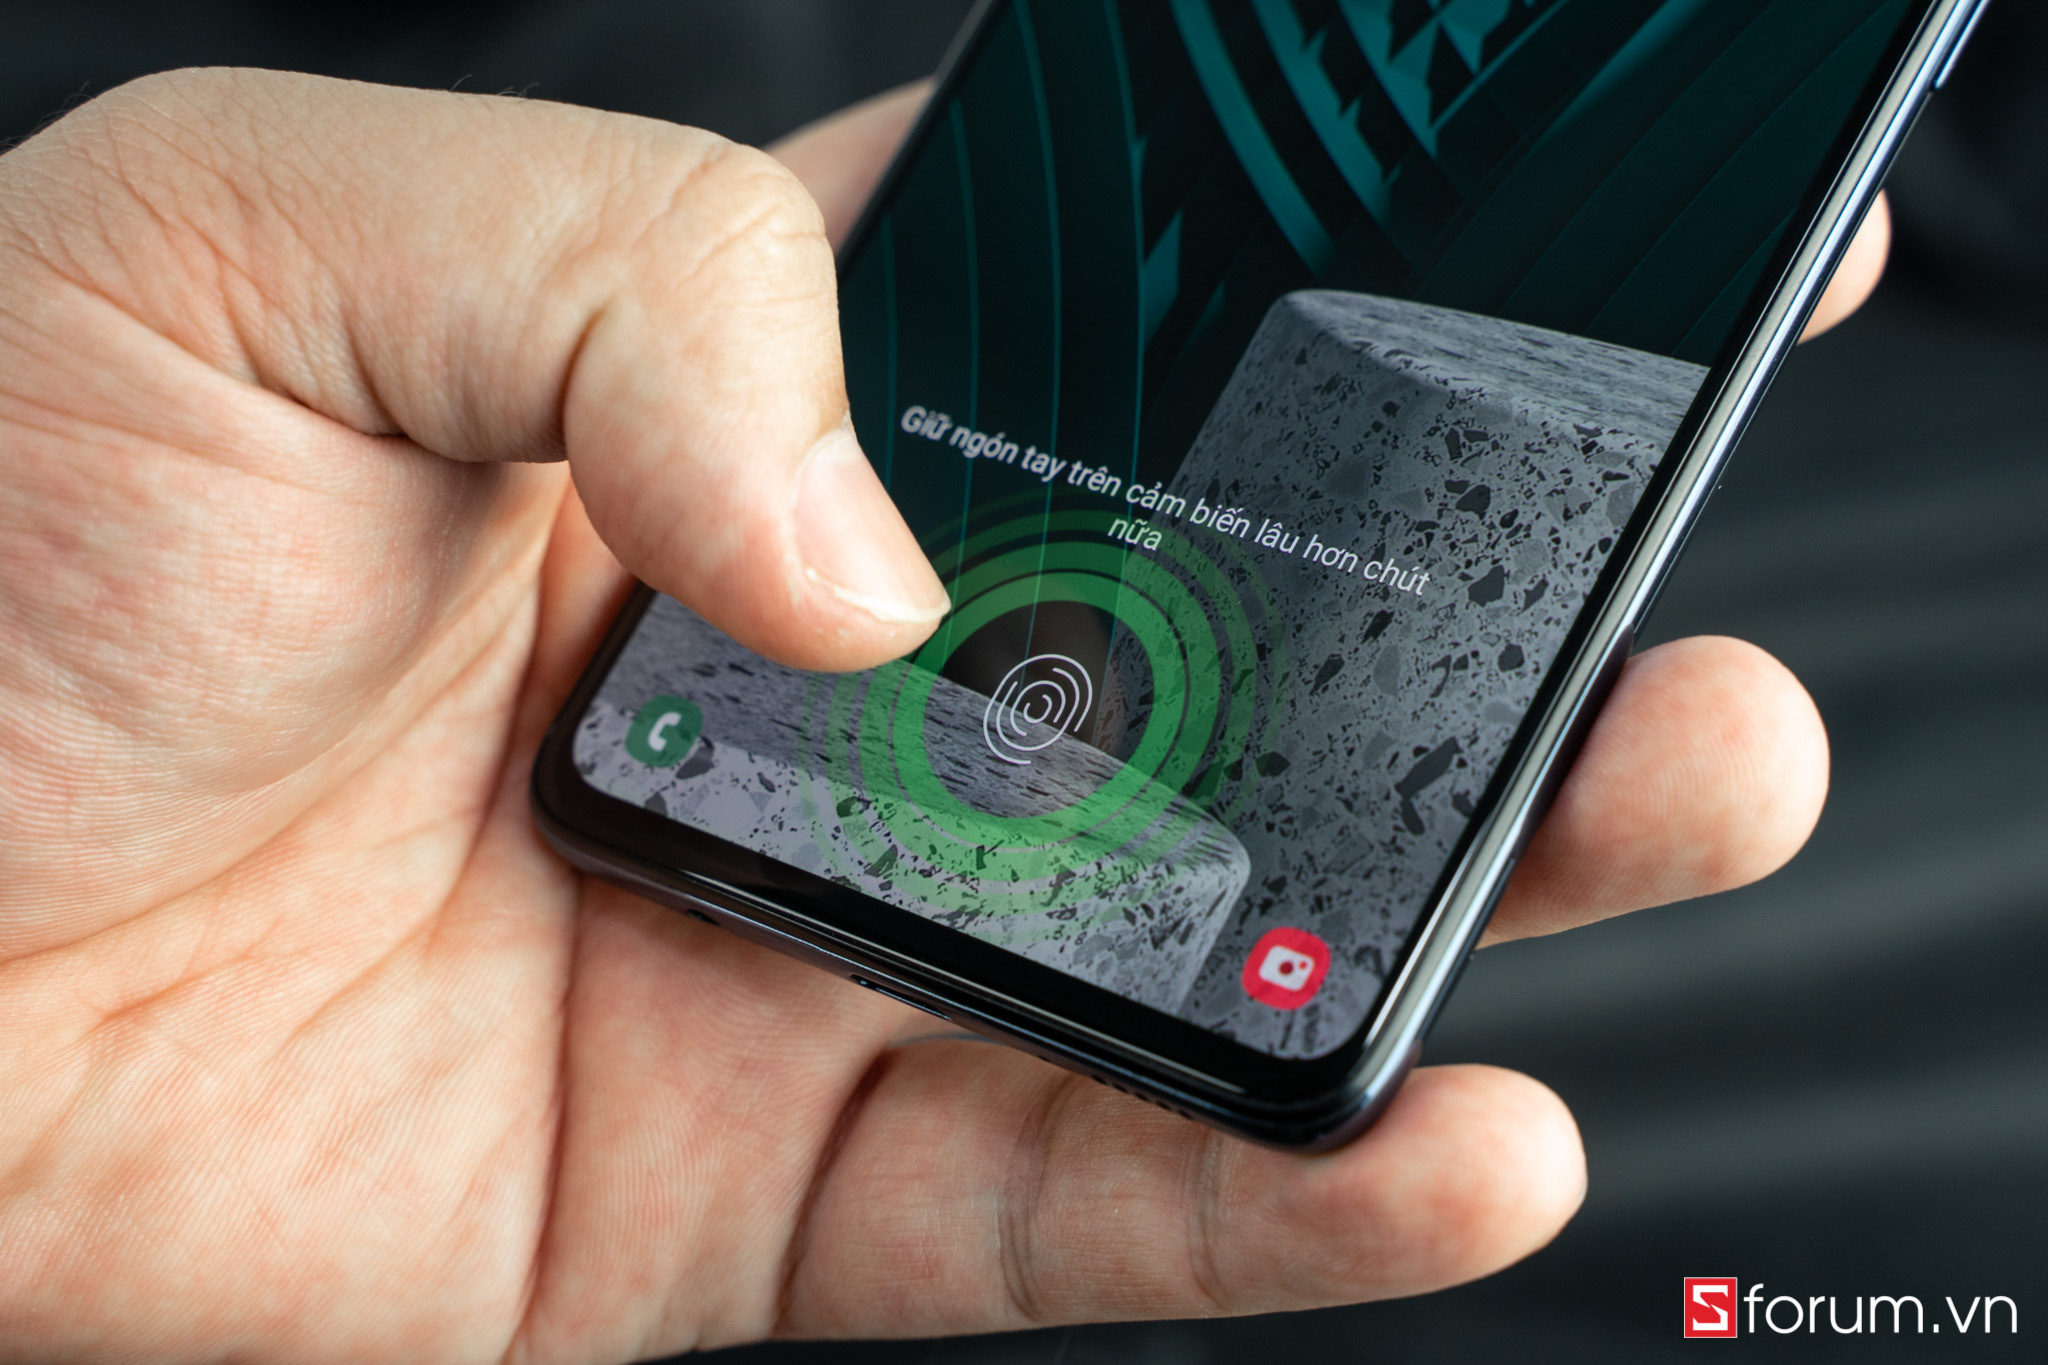 Sforum - Trang thông tin công nghệ mới nhất tren-tay-defunc-true-go-5-1 Đánh giá Galaxy A51 sau 1 tháng sử dụng: Trải nghiệm vẫn tốt, giá cũng đã mềm hơn 